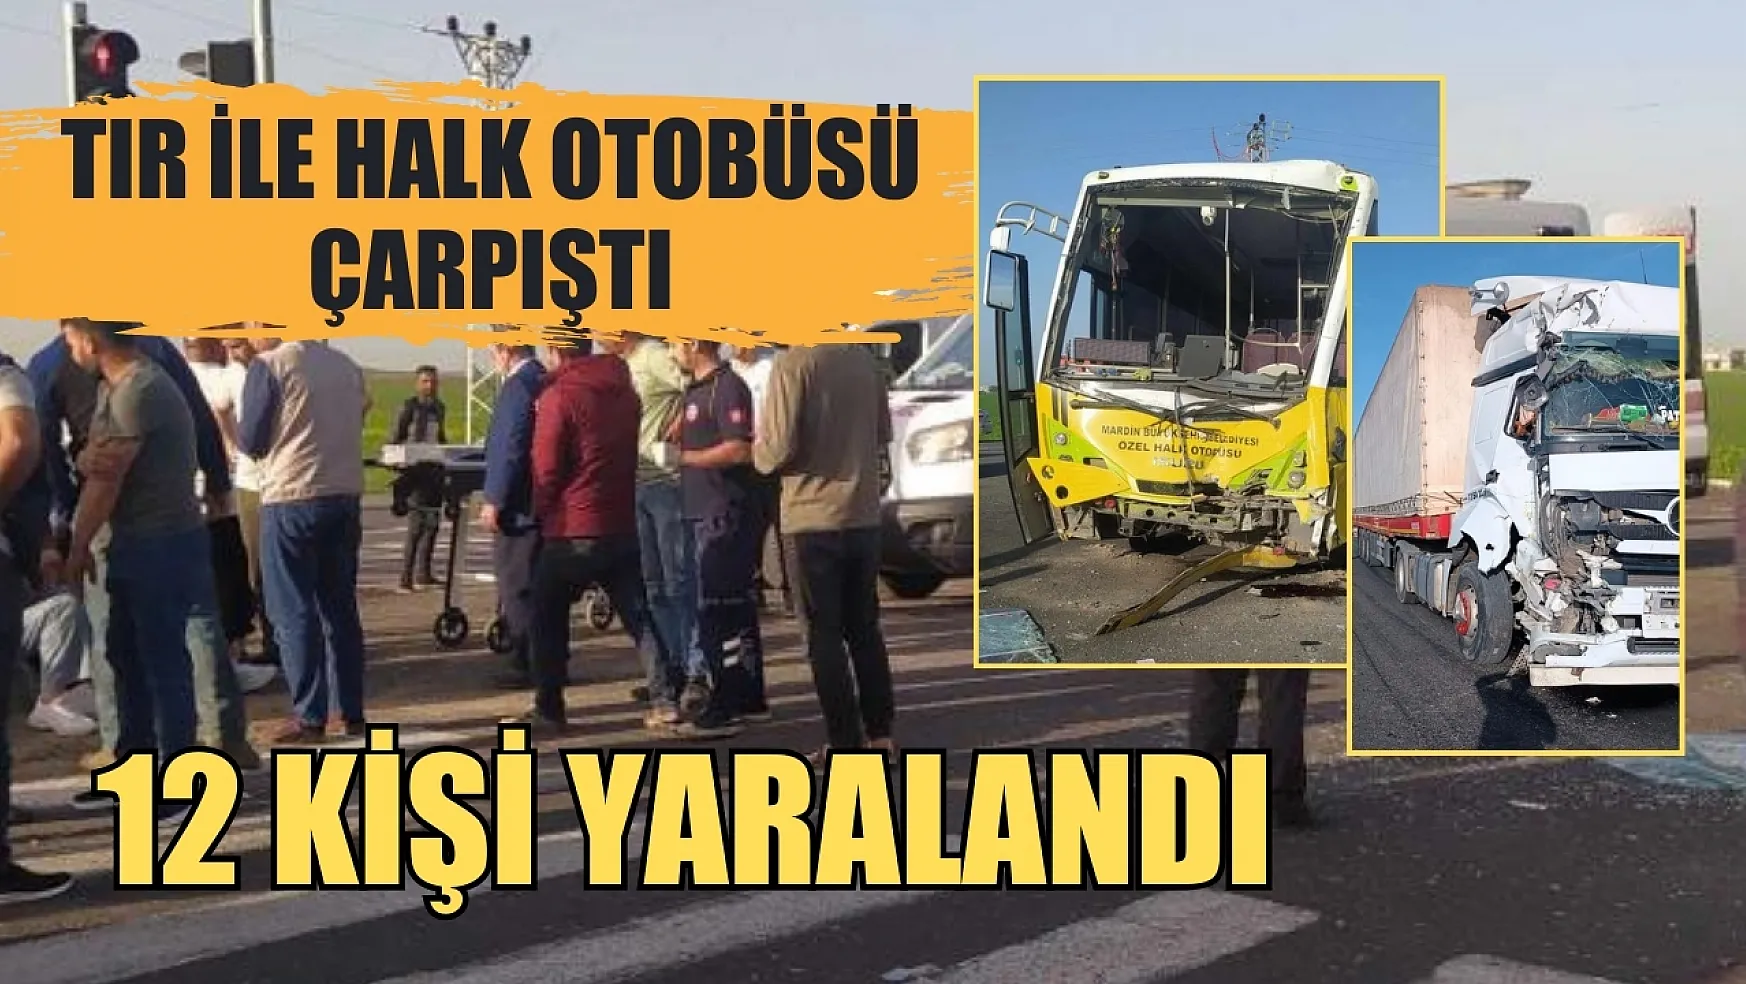 Tır ile halk otobüsü çarpıştı, 12 kişi yaralandı